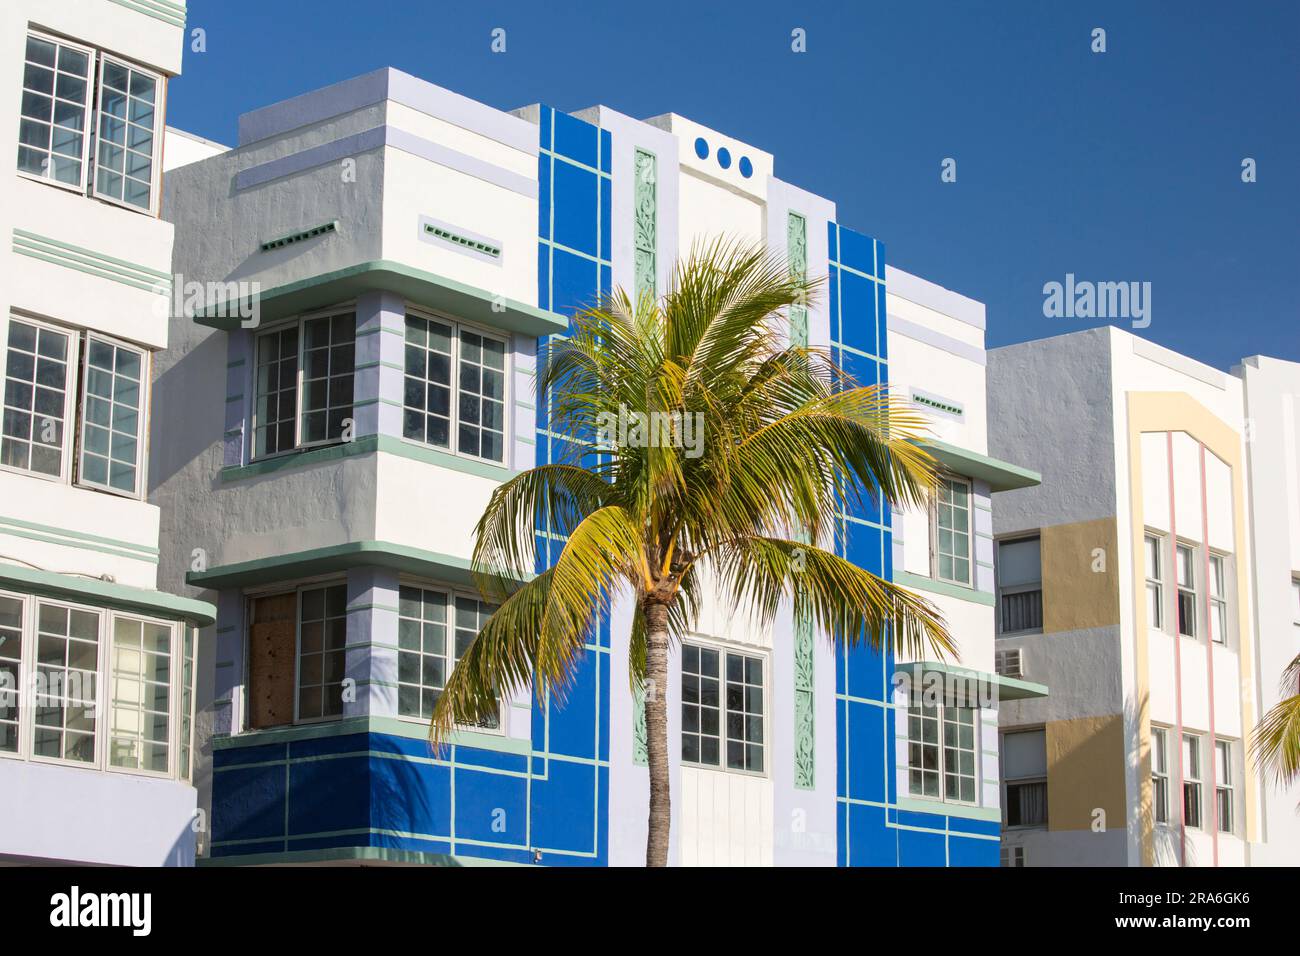 Miami Beach, Floride, États-Unis. Façade colorée de l'hôtel Gabriel, Ocean Drive, quartier architectural de Miami Beach, South Beach. Banque D'Images